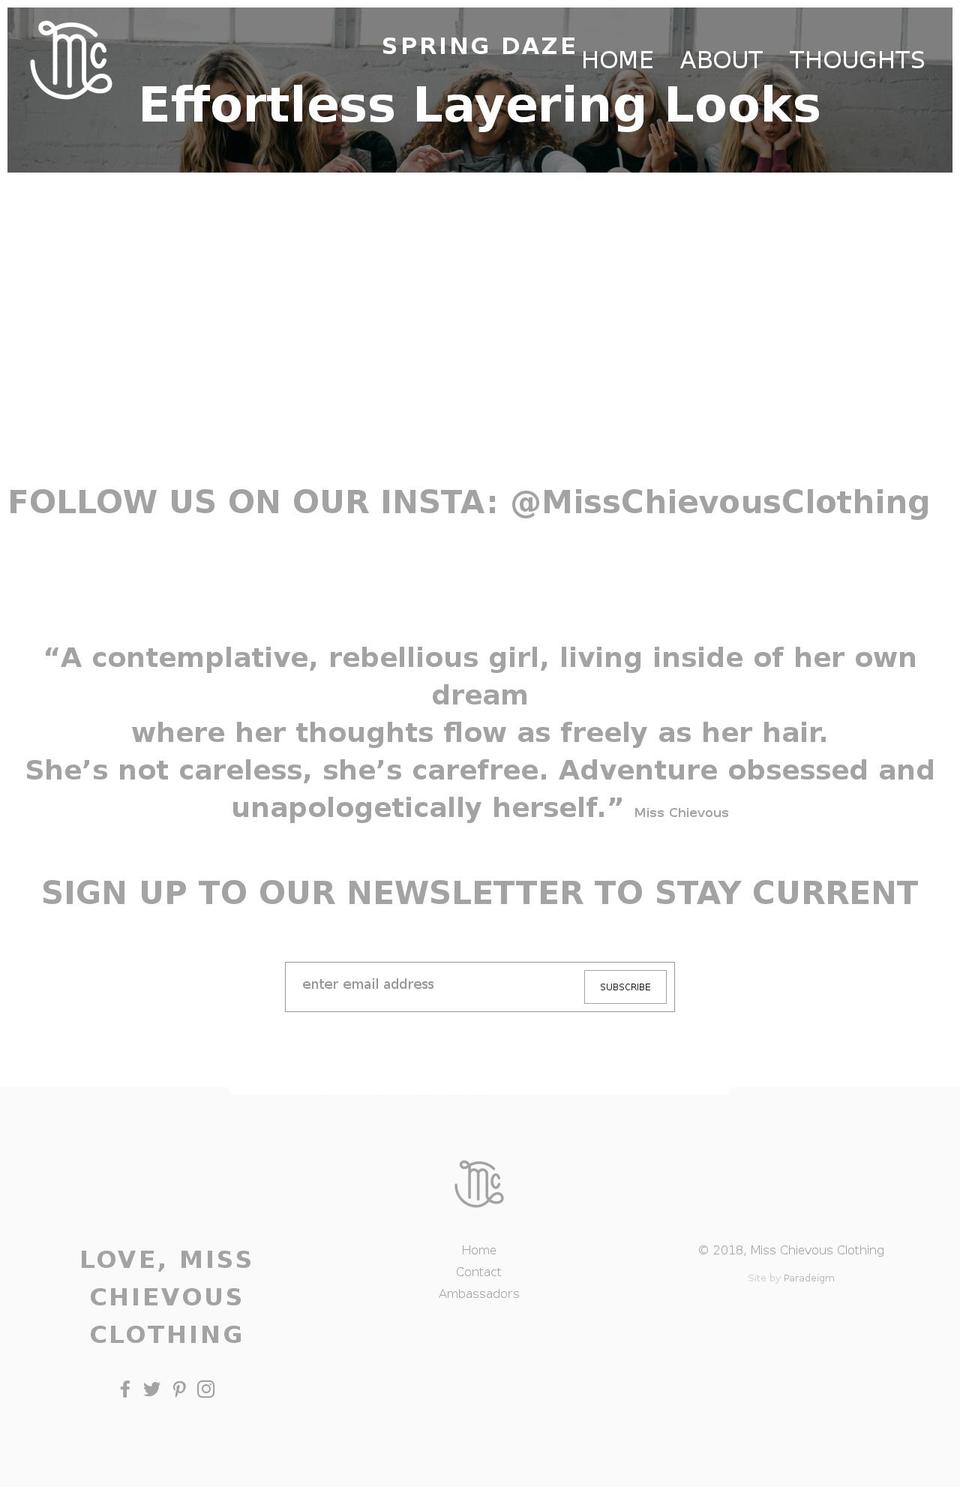 Miss Chievous Production Shopify theme site example misschievousclothing.com